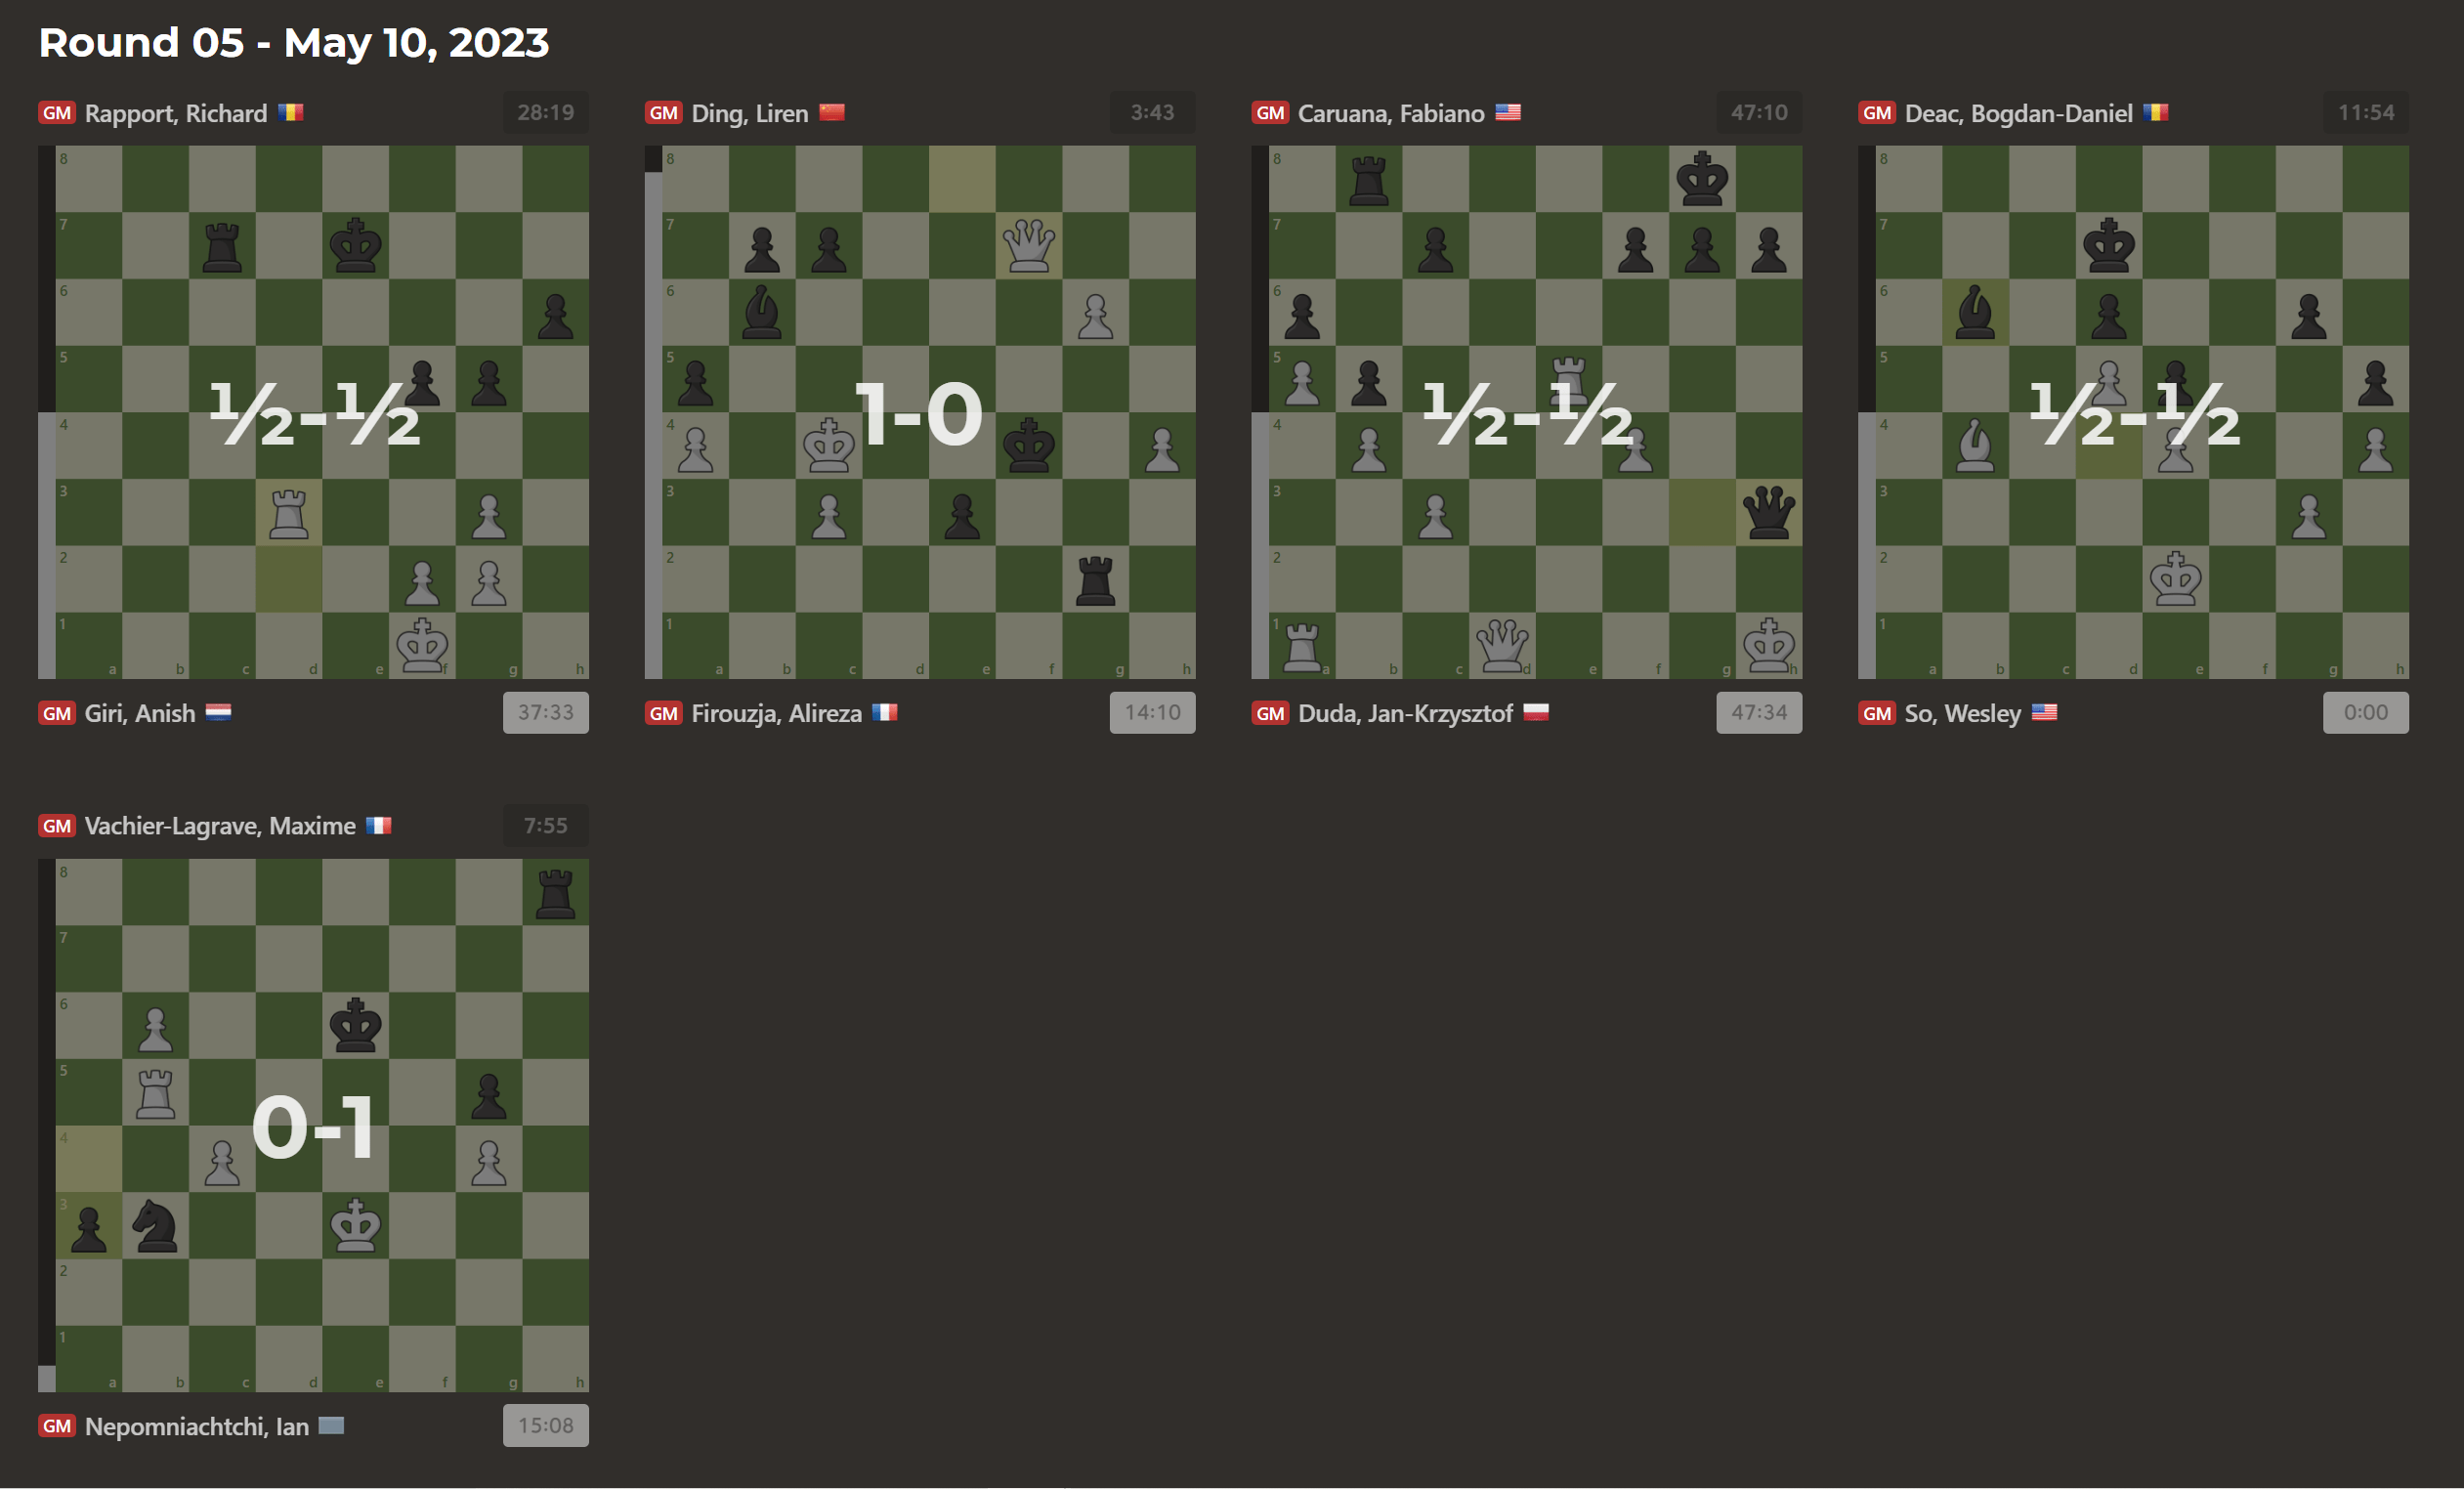 Superbet Chess Classic 2023 Round 5: Firouzja beats Ding Liren